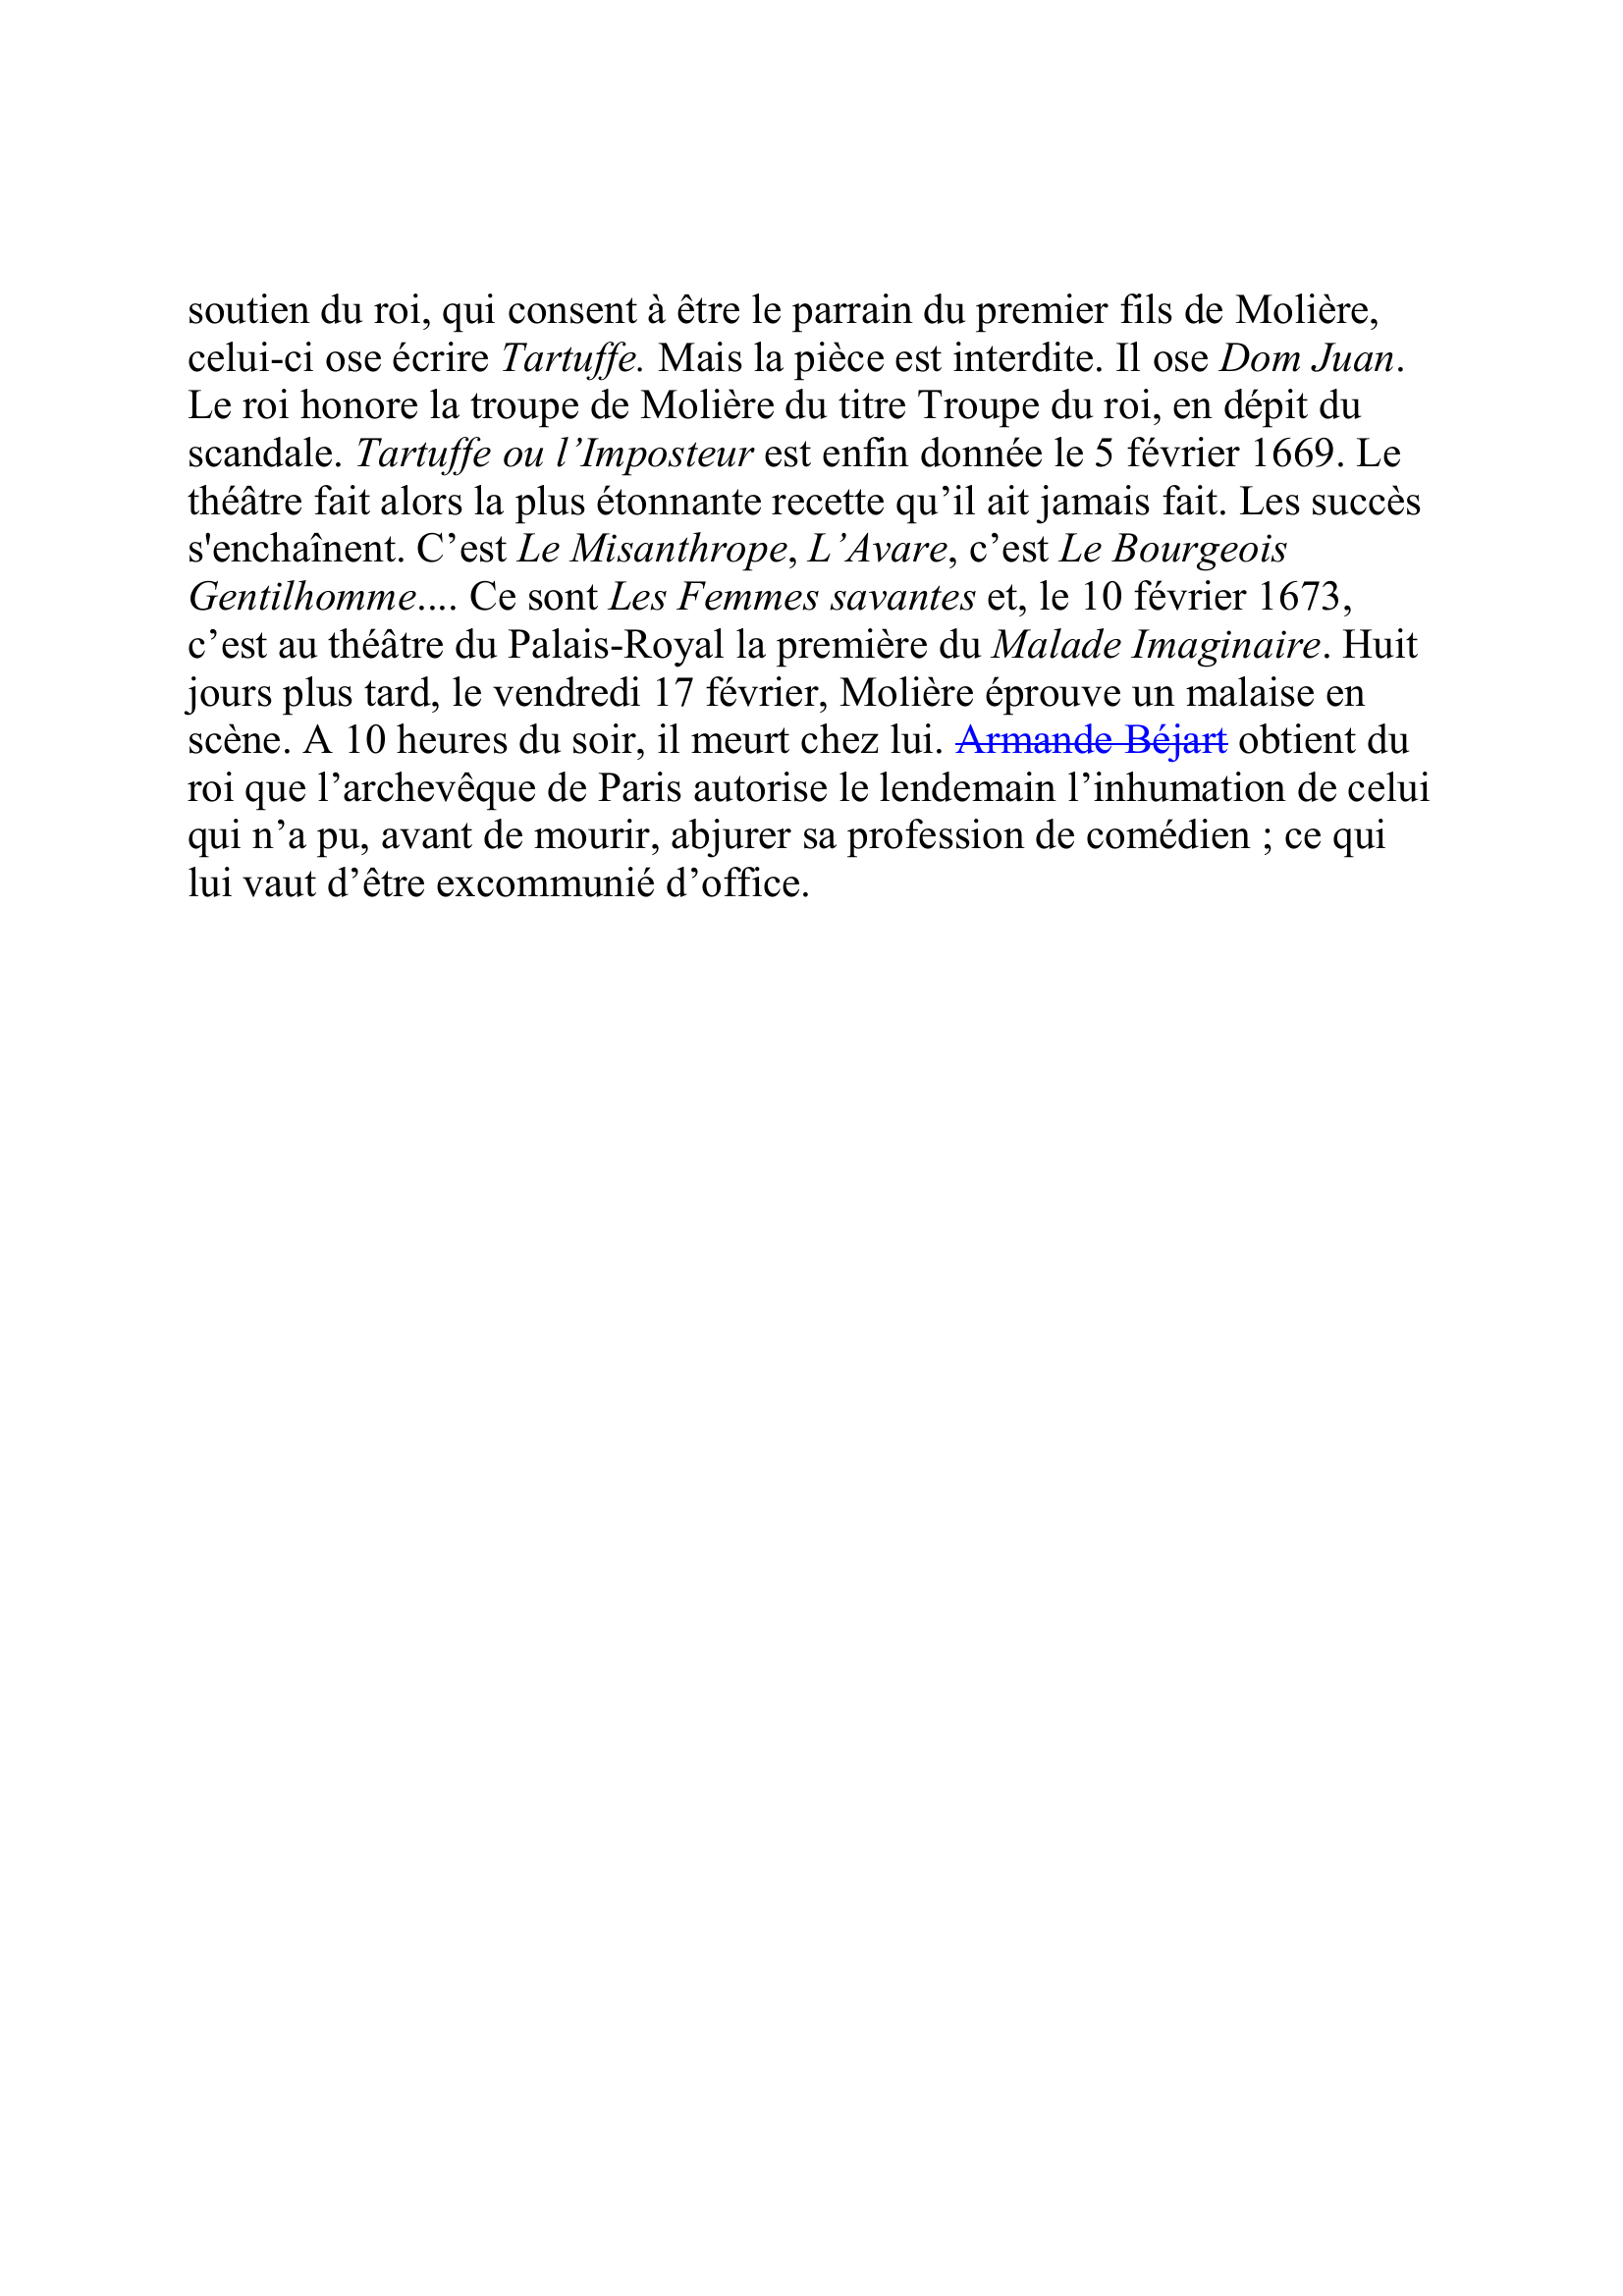 Prévisualisation du document MOLIERE, Jean-Baptiste Poquelin, dit
(janvier 1622-17 février 1673)
Auteur dramatique, comédien
Jusqu'à dix-sept ans, Jean-Baptiste Poquelin mène ses études chez les
jésuites de l'important collège de Clermont, à Paris.